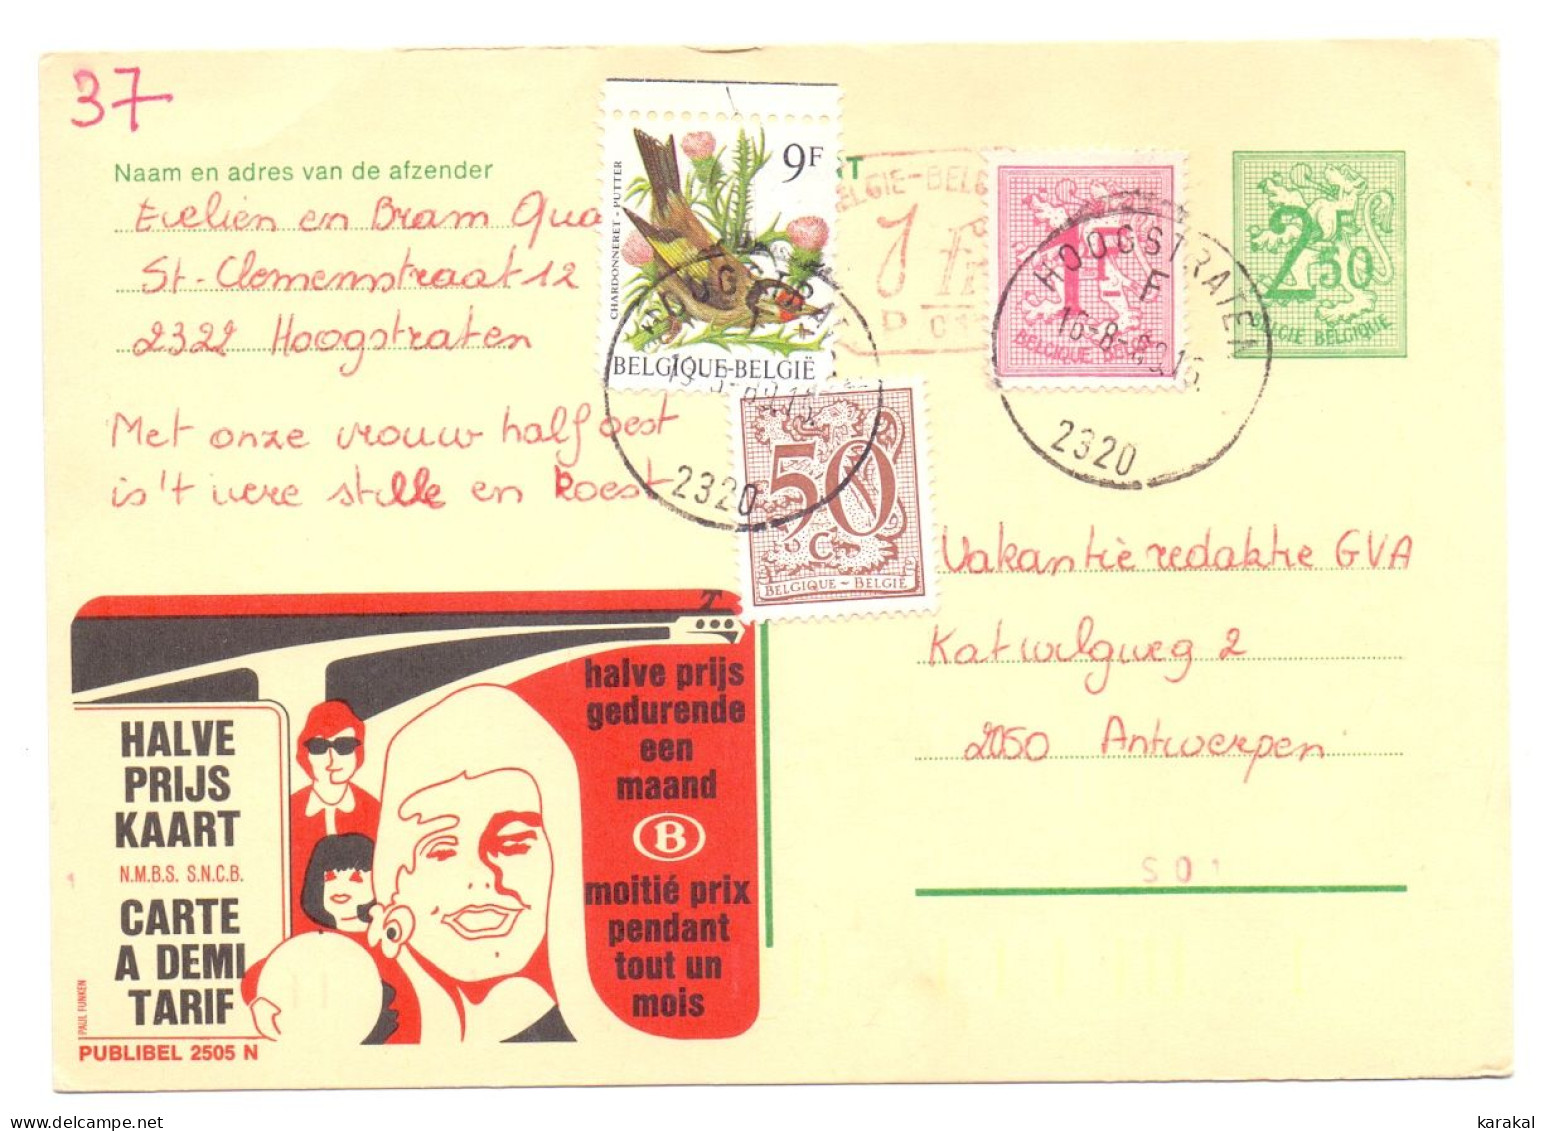 Belgique Entier Postal Stationery Publibel 2505 N P010 SNCB NMBS Halve Prijs Kaart Hoogstraten 1989 - Avviso Cambiamento Indirizzo